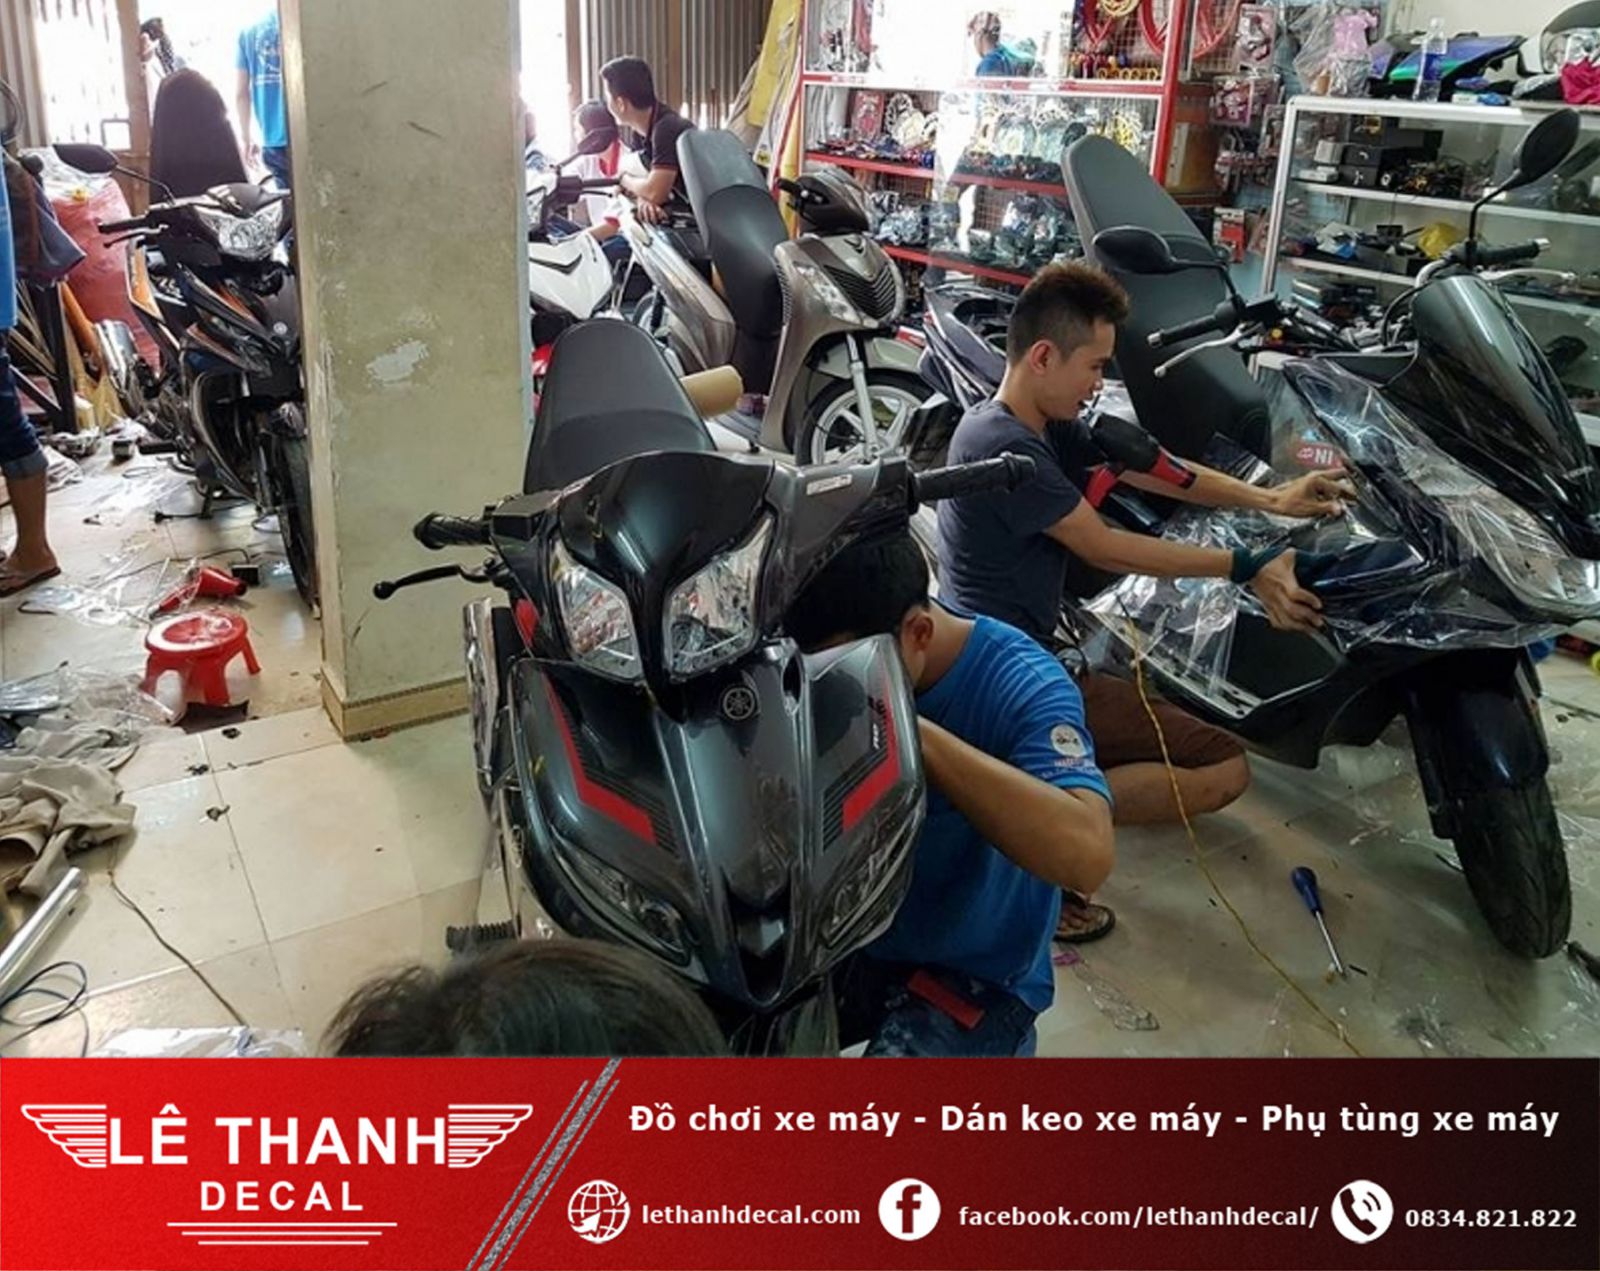 [TOP] 10+ tiệm dán decal xe máy tại quận Bình Thạnh uy tín, chất lượng 2023